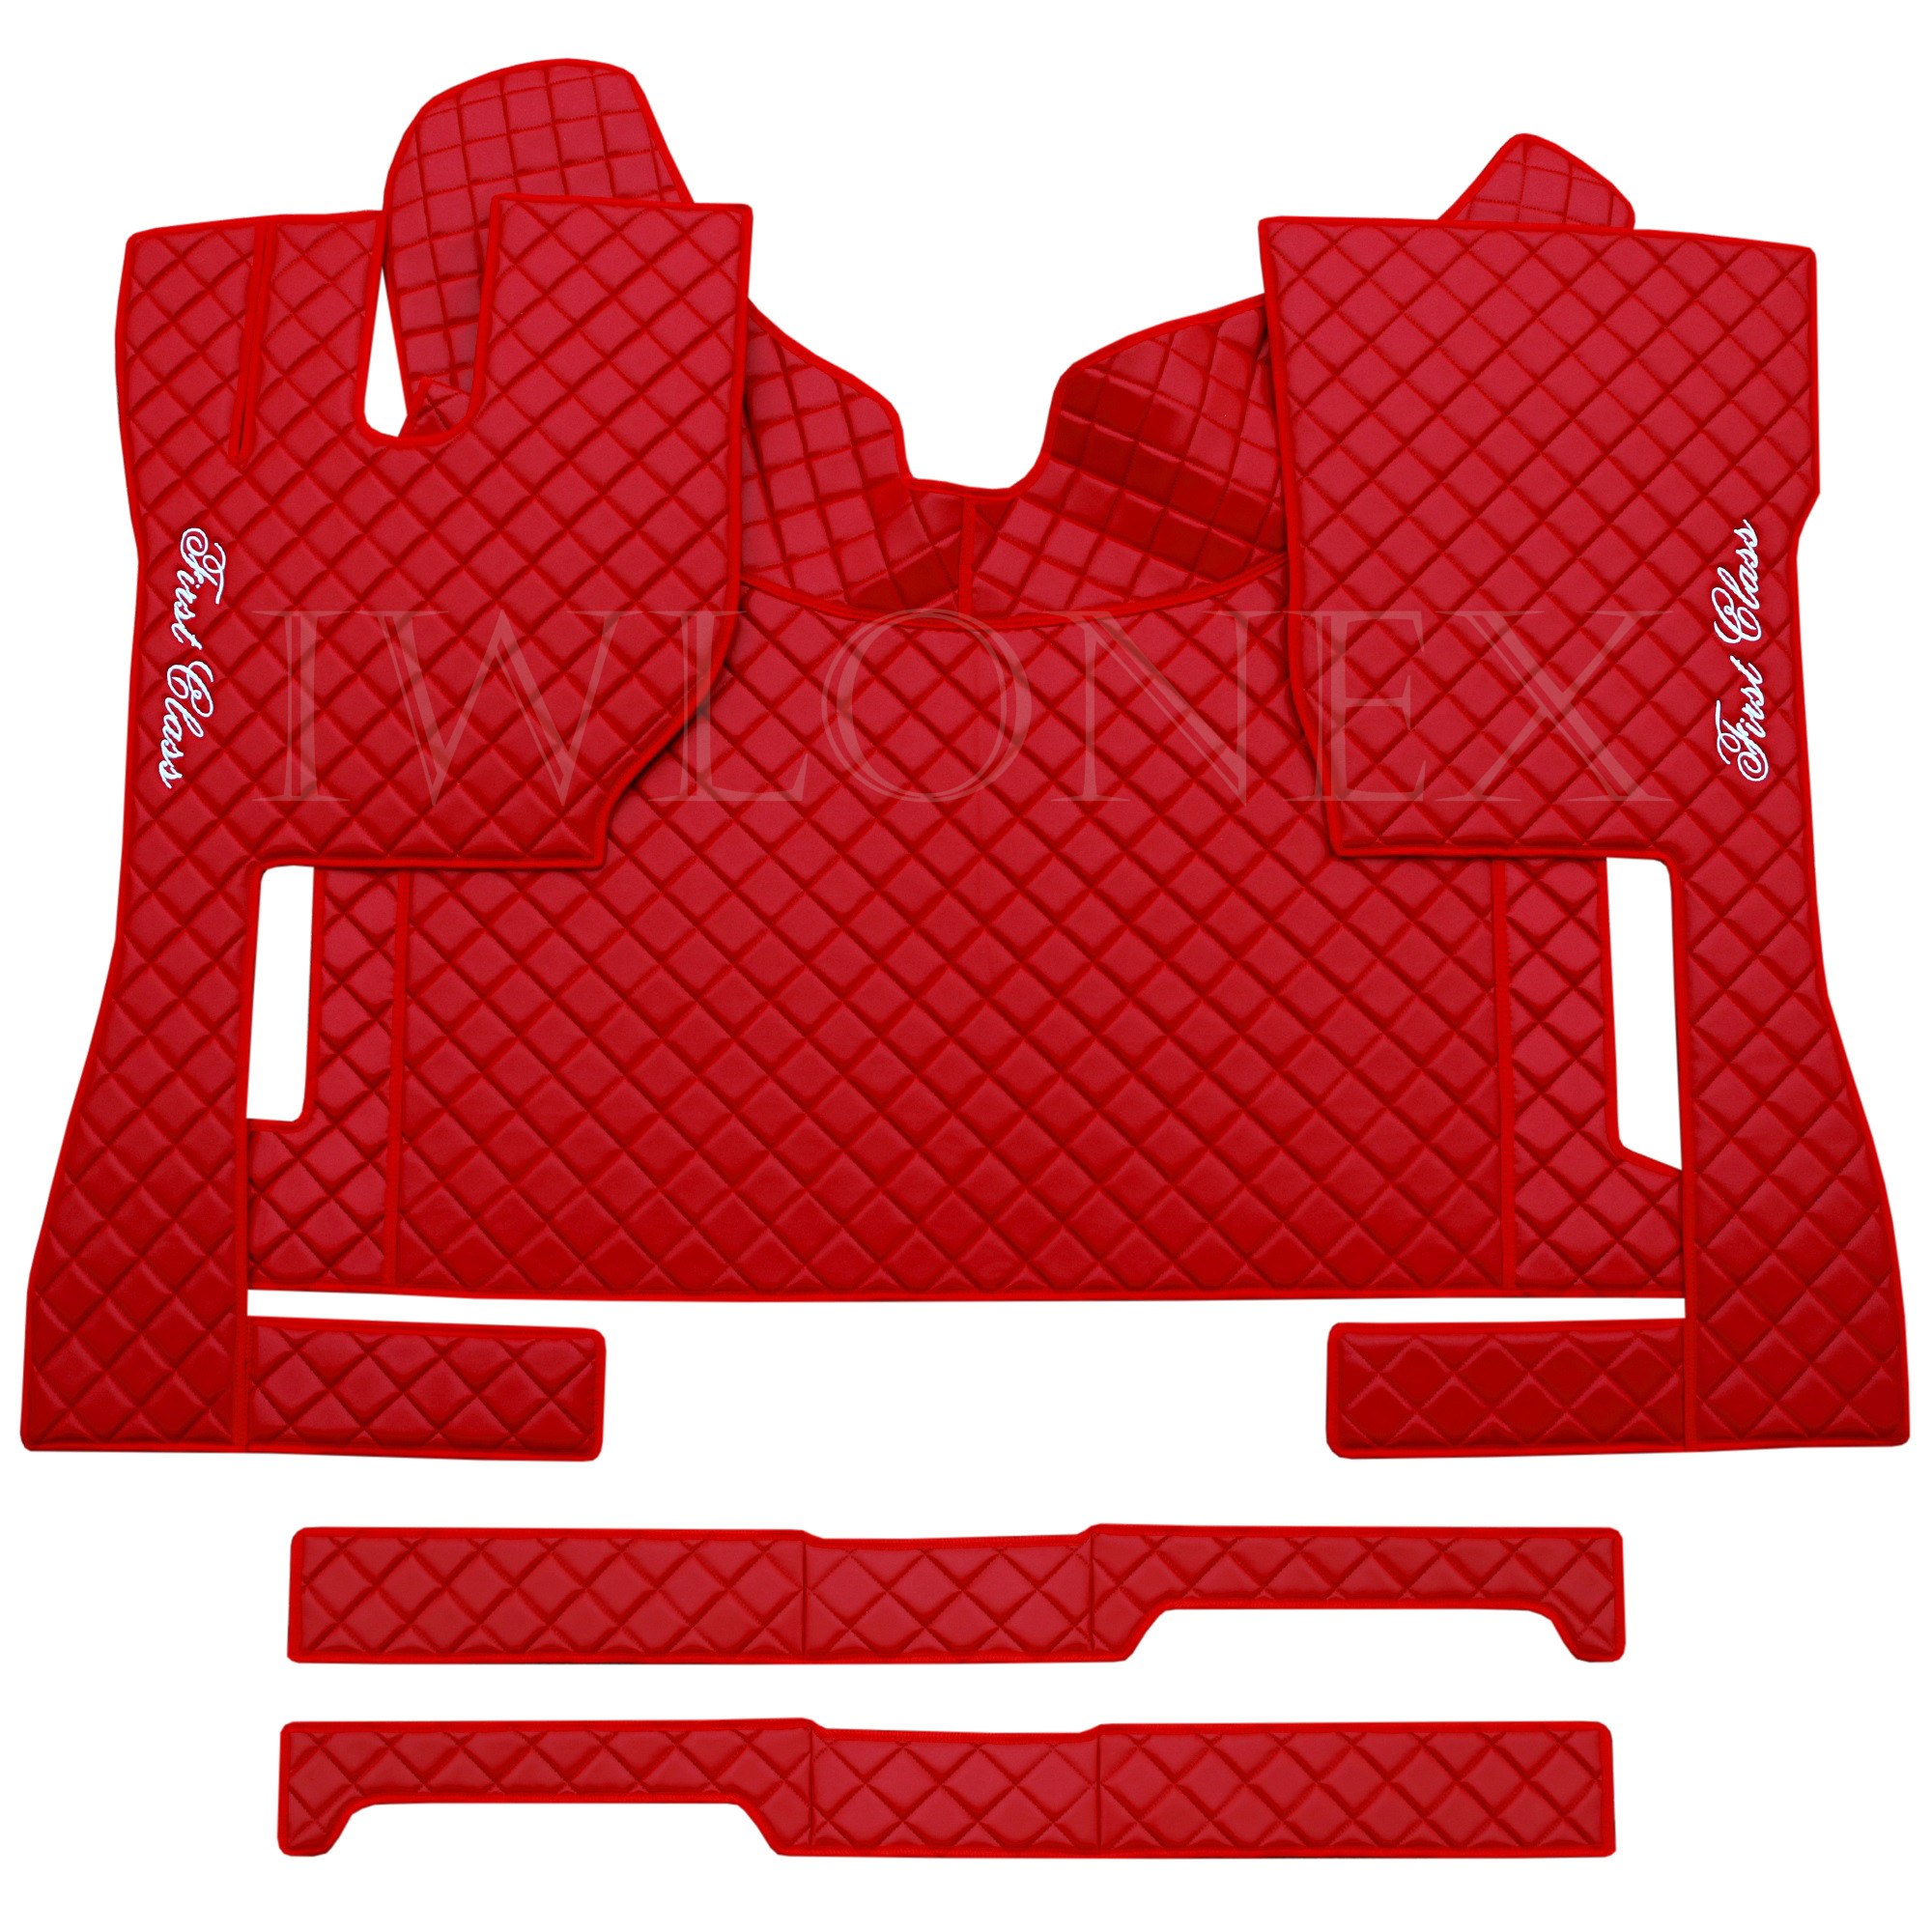 Iwlonex passend für - Fußmatten + Automatik VOLVO FH4 Sitzsockelverkleidung Rot